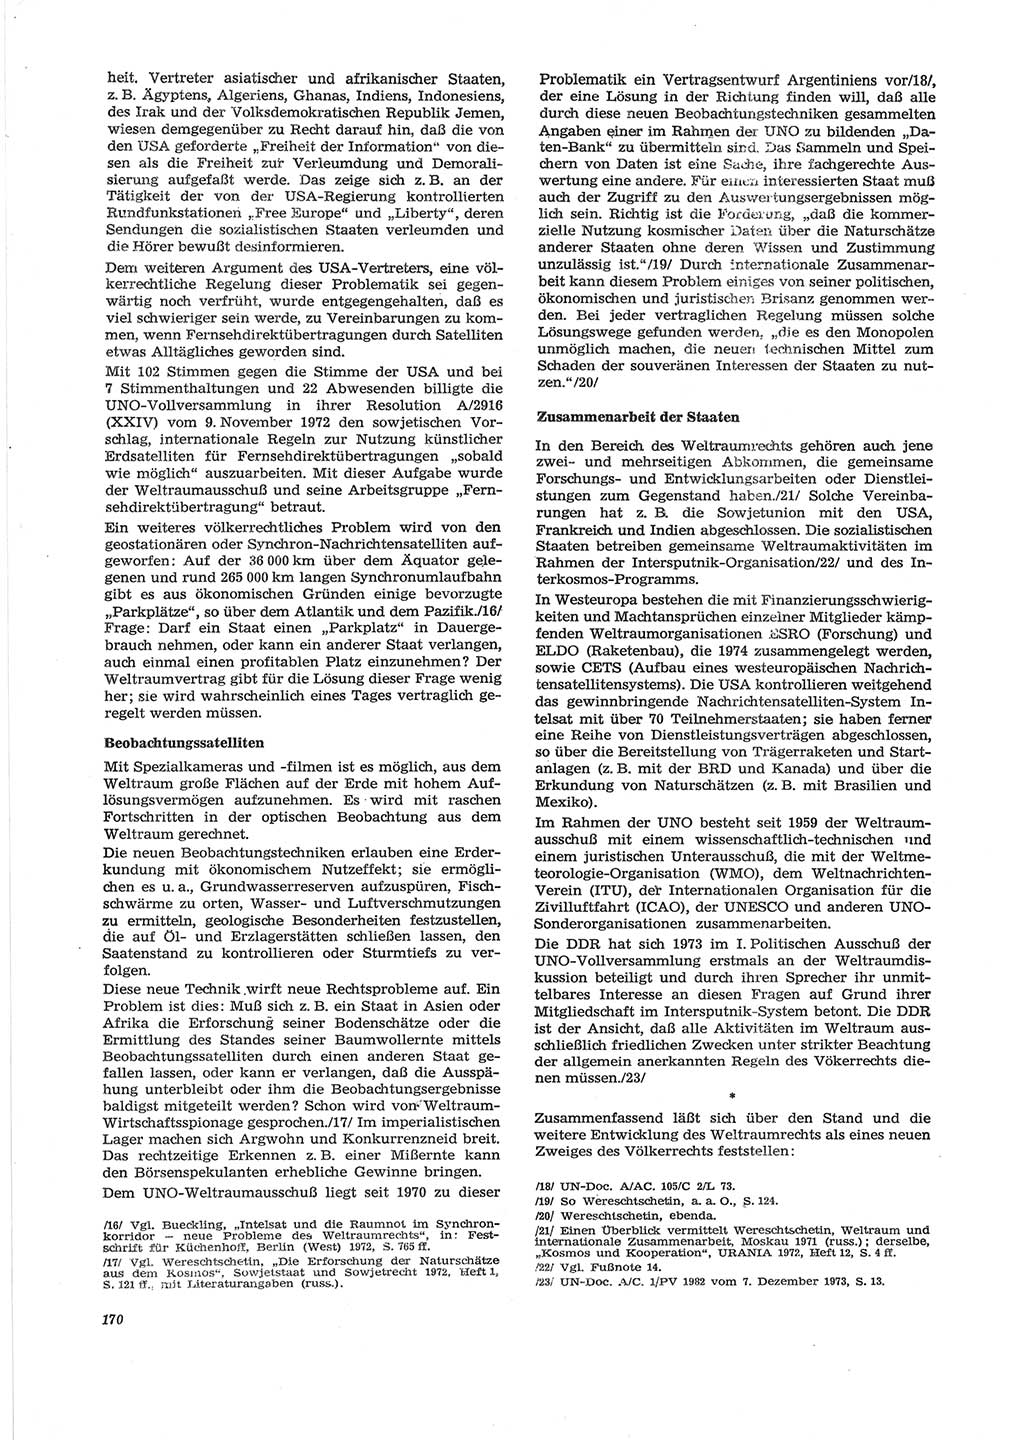 Neue Justiz (NJ), Zeitschrift für Recht und Rechtswissenschaft [Deutsche Demokratische Republik (DDR)], 28. Jahrgang 1974, Seite 170 (NJ DDR 1974, S. 170)